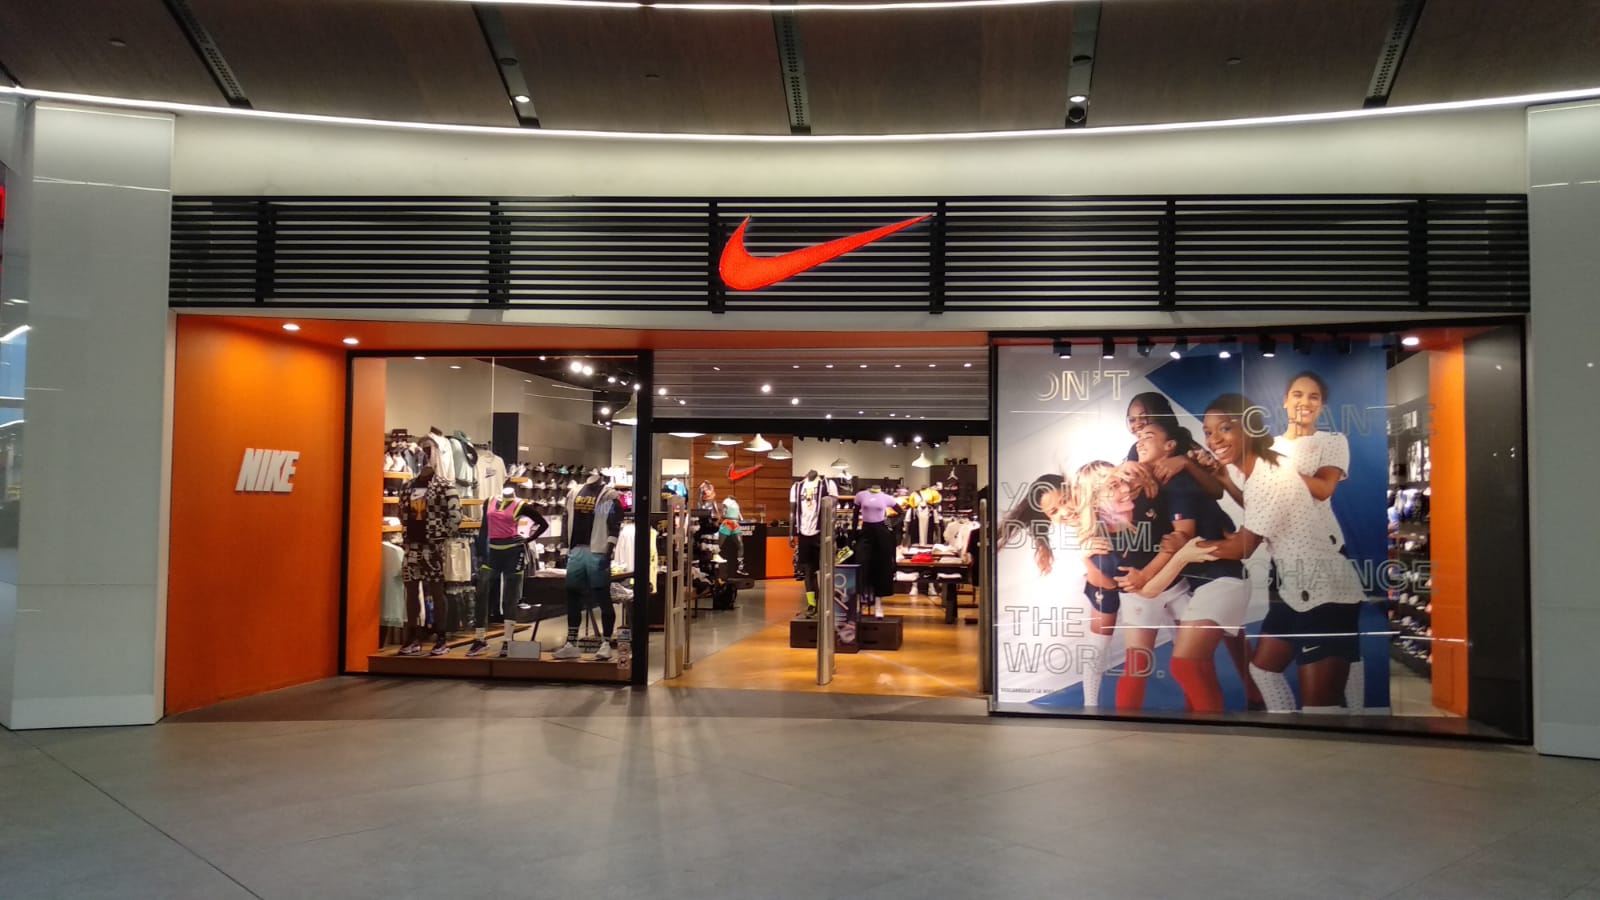 Nike Store Barcelona - Diagonal Mar - Deportes Y Ocio: Artículos Y Ropas (Al Por Menor Y Accesorios) en Barcelona (dirección, opiniones, TEL: 933560...) - Infobel